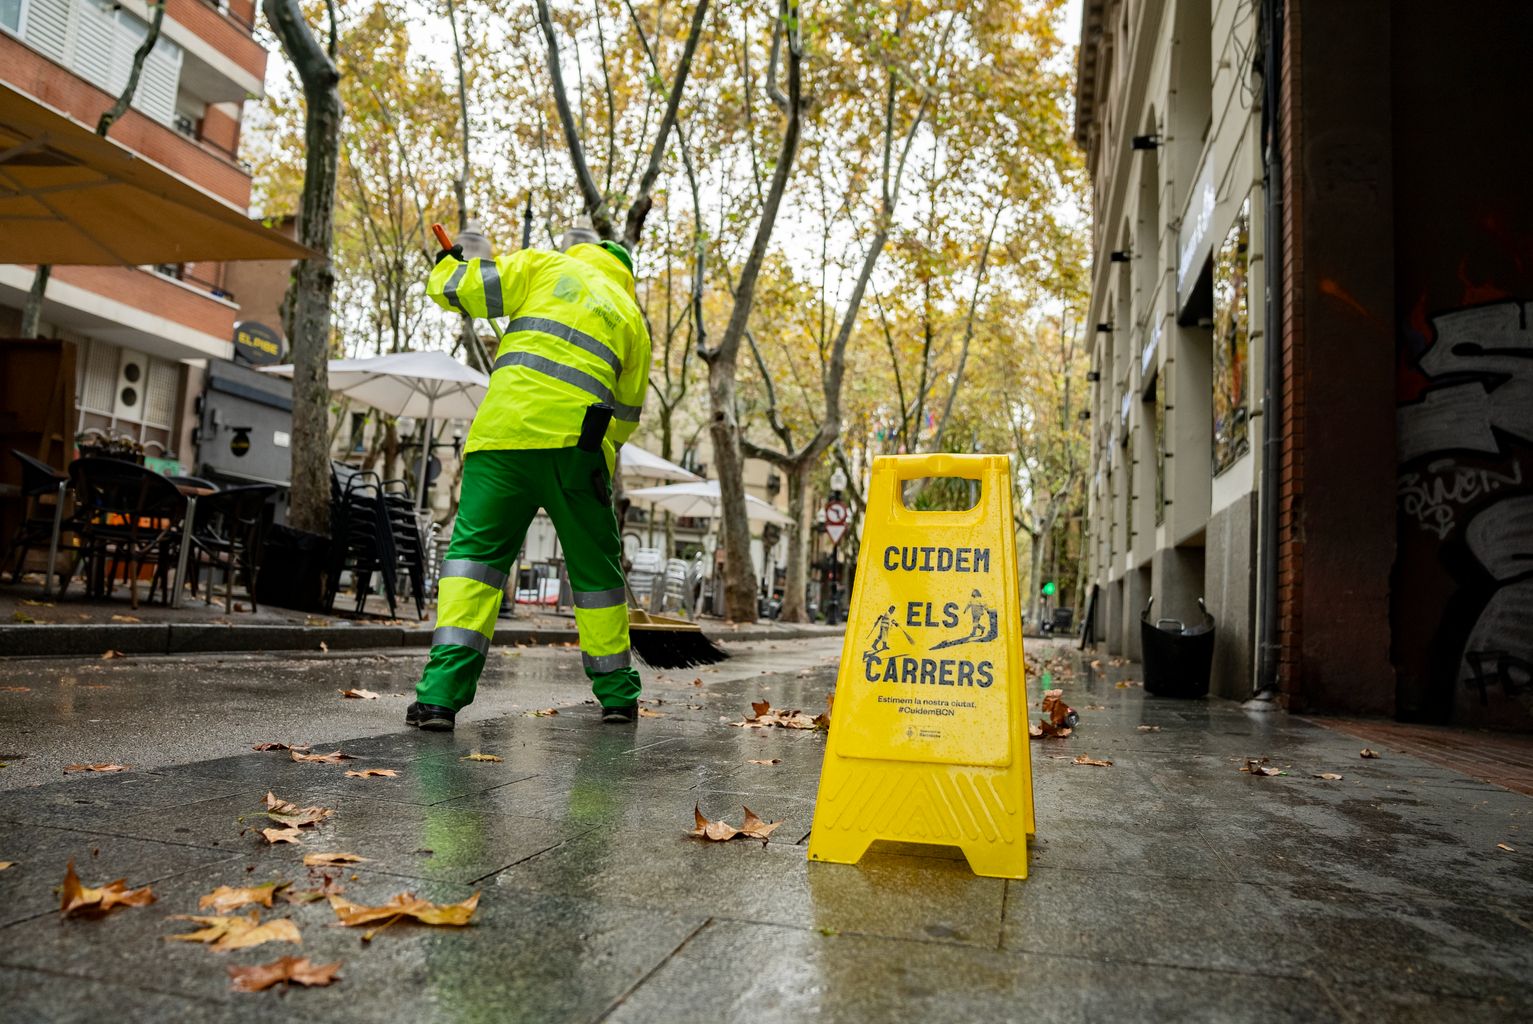 Un trabajador del Servicio de Limpieza barre las hojas secas de una acera de la rambla del Poblenou. Ha puesto un indicador de aviso con el letrero “Cuidem els carrers”